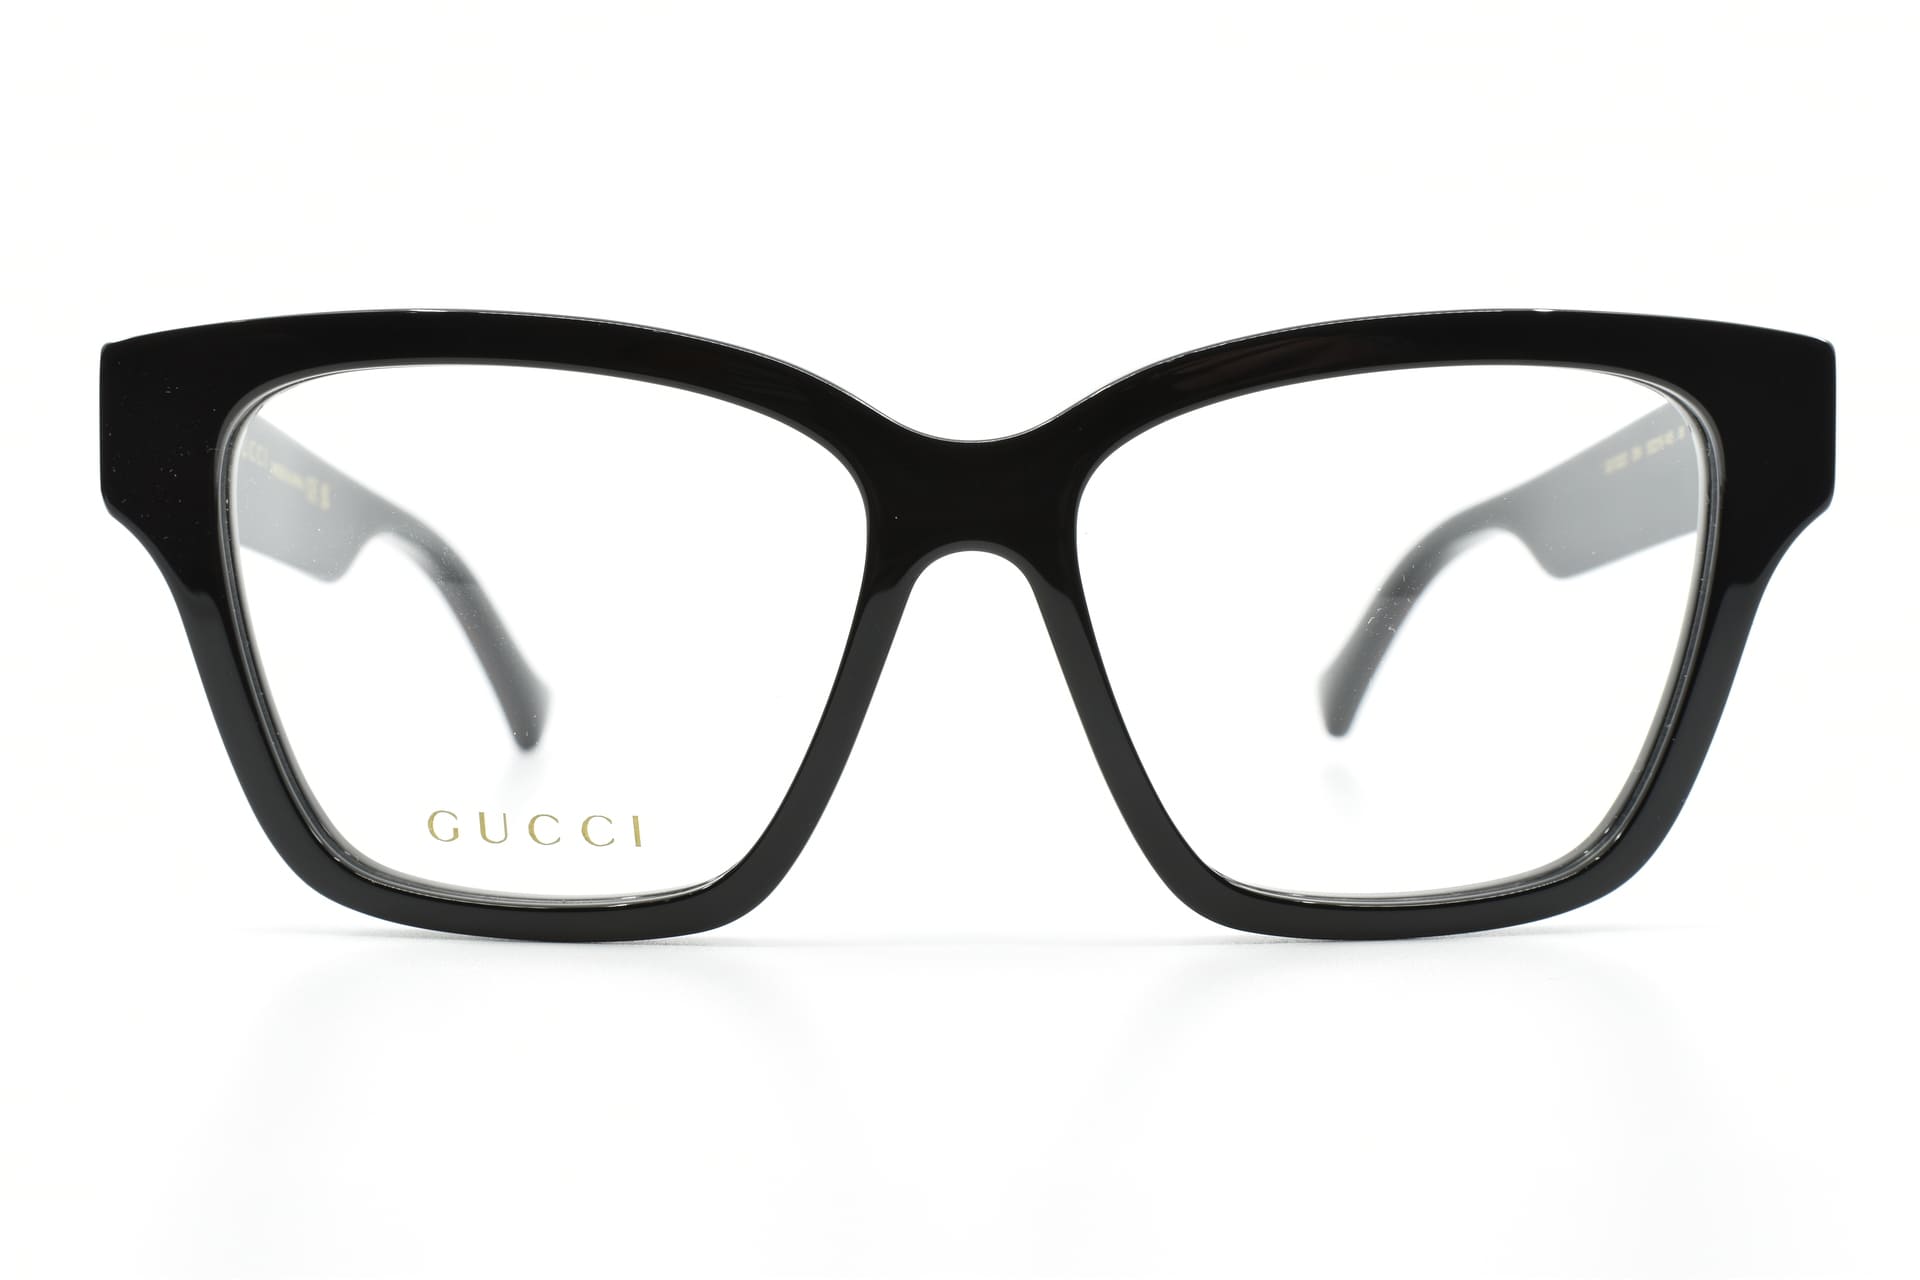 Gucci - Noire / 55-15-145